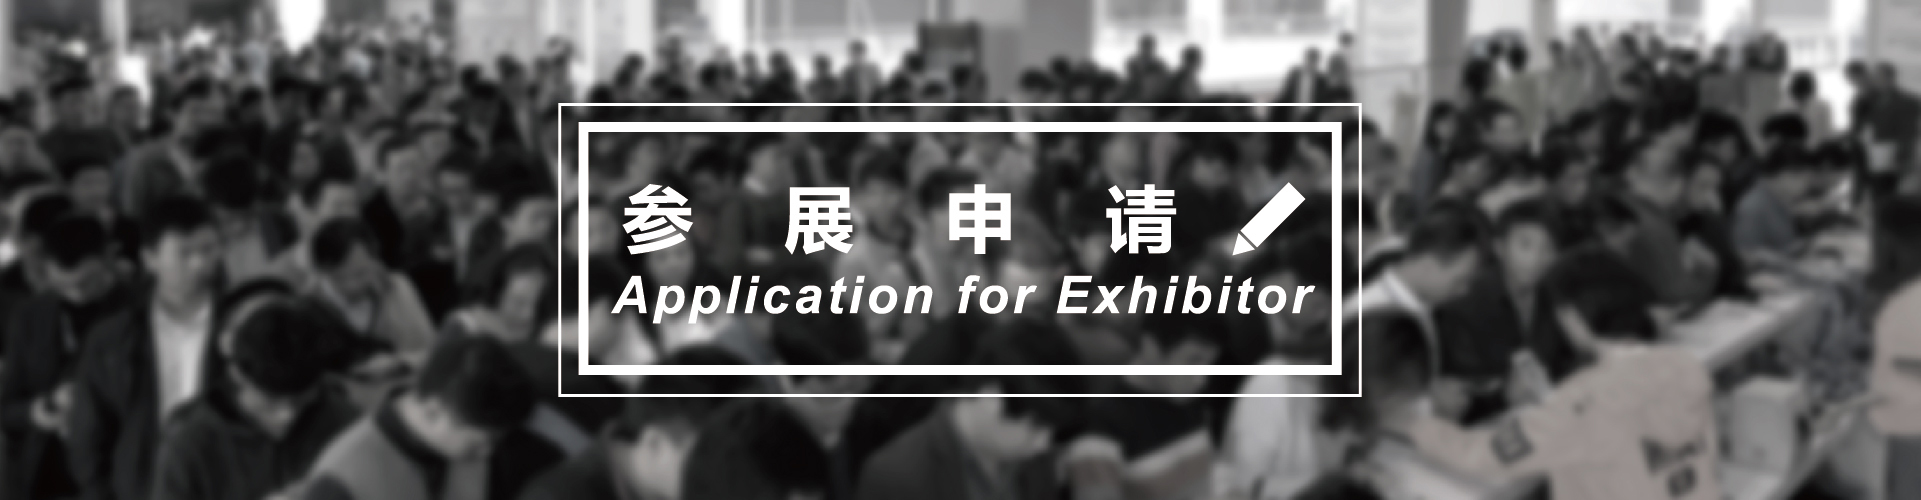 亚洲2020上海国际塑胶机械工业展览会